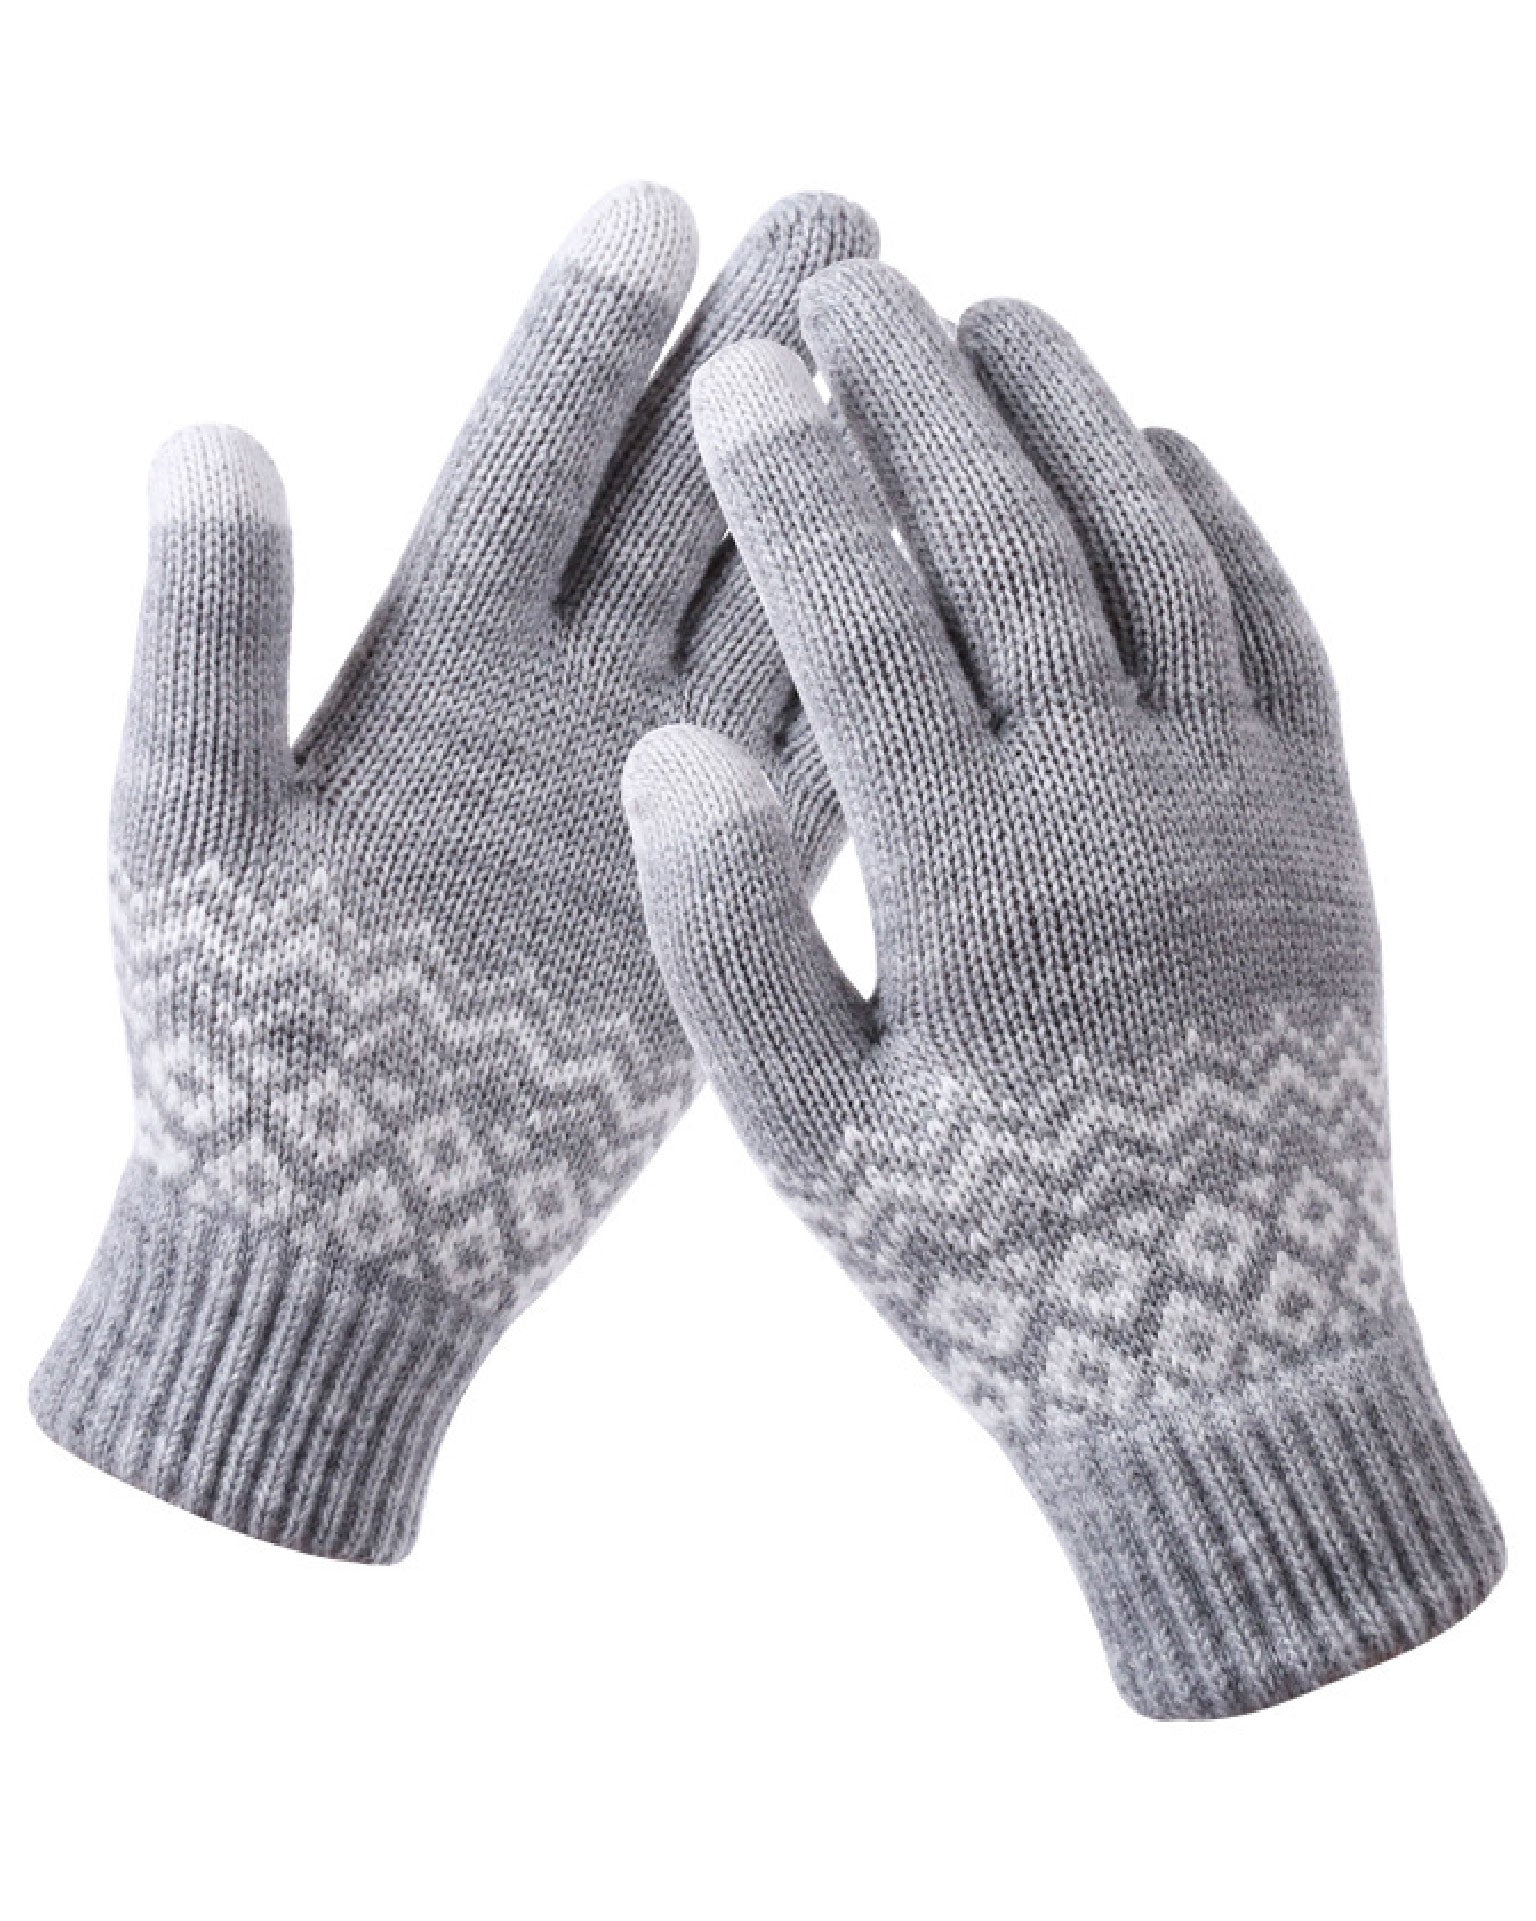 Handschoenen Wool - Grijs - OneSize